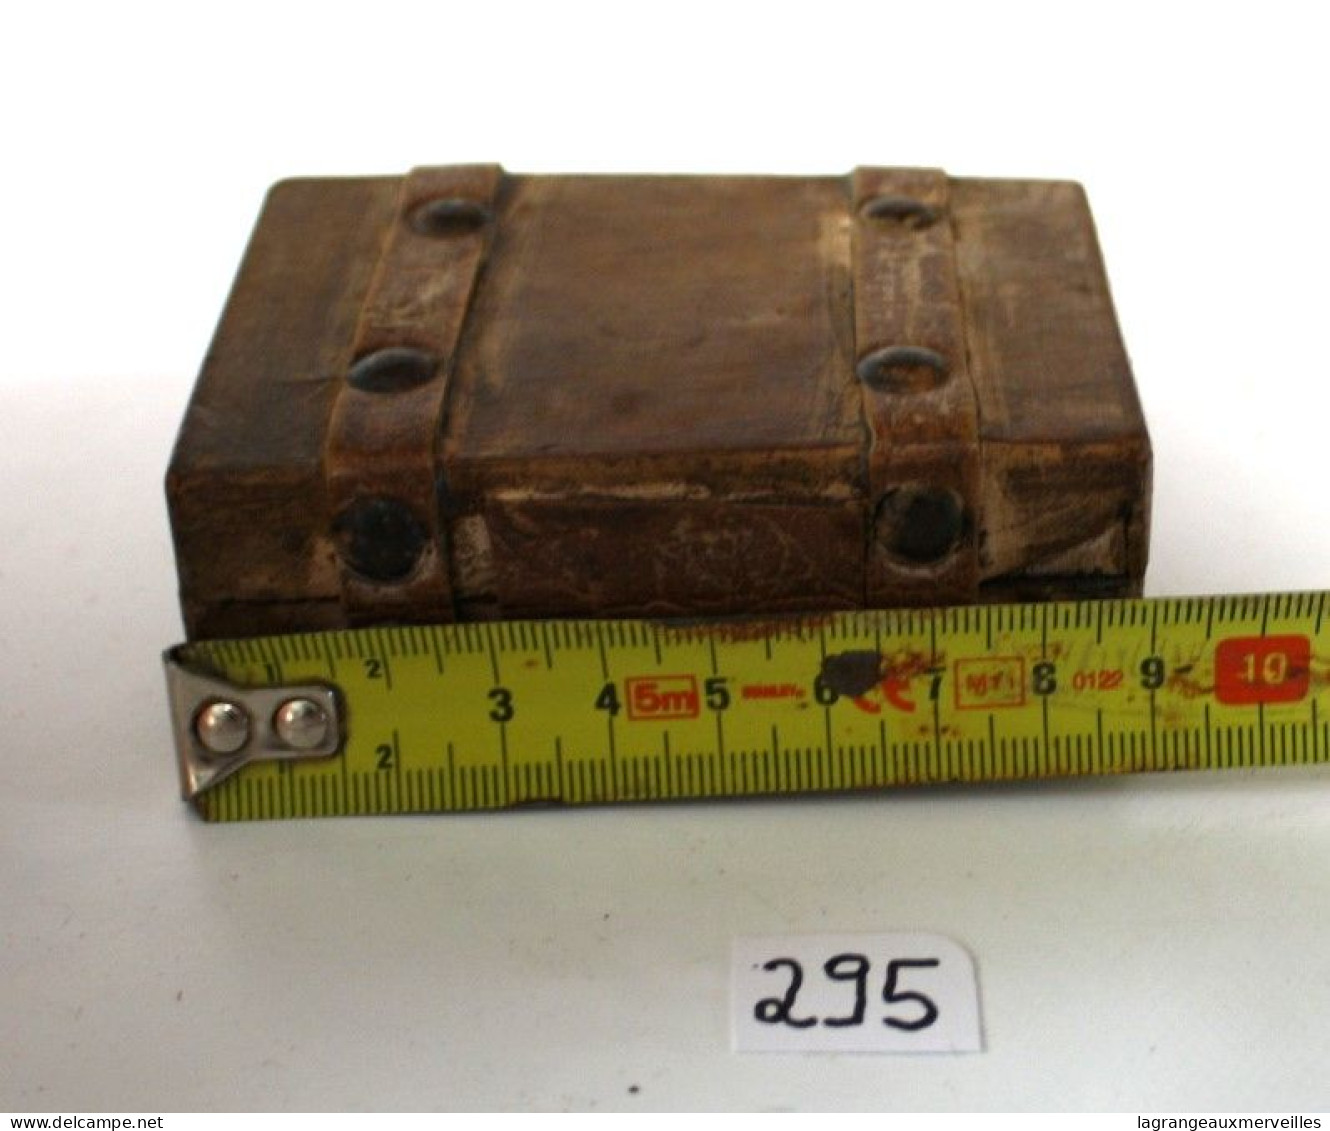 C295 Ancienne Boite Miniature Représentant Une Valise - Supplies And Equipment